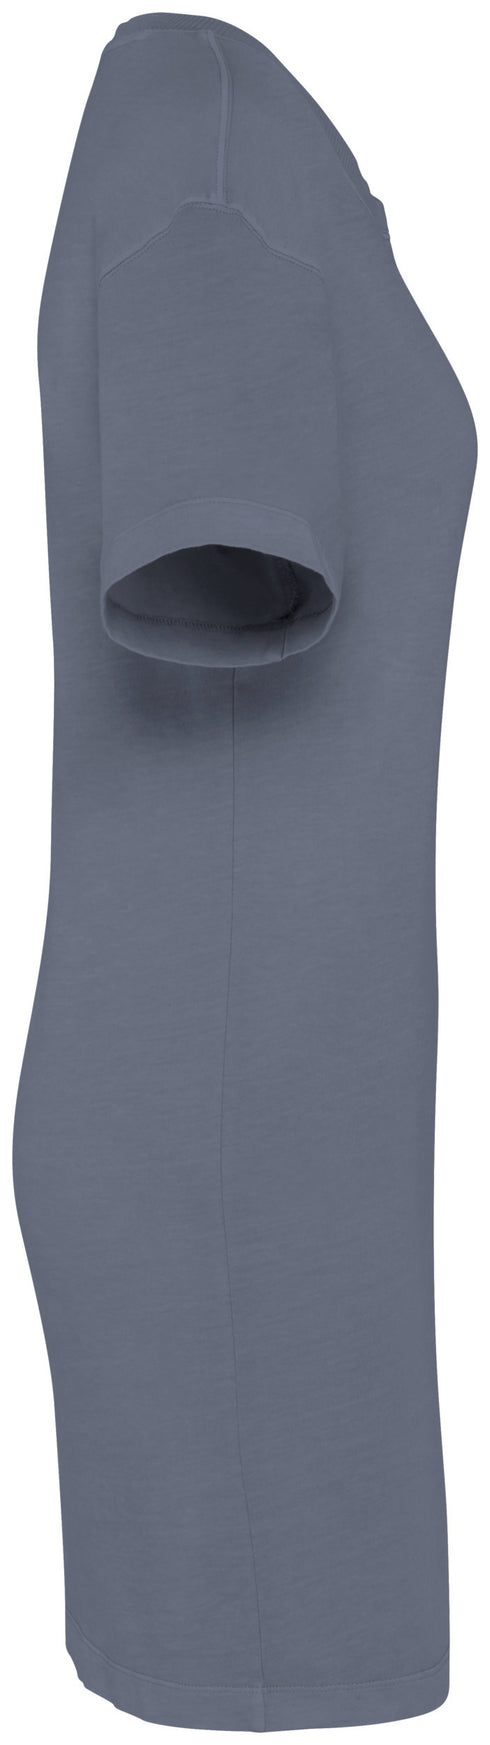 T-shirt Dress - 165gsm - NS5000